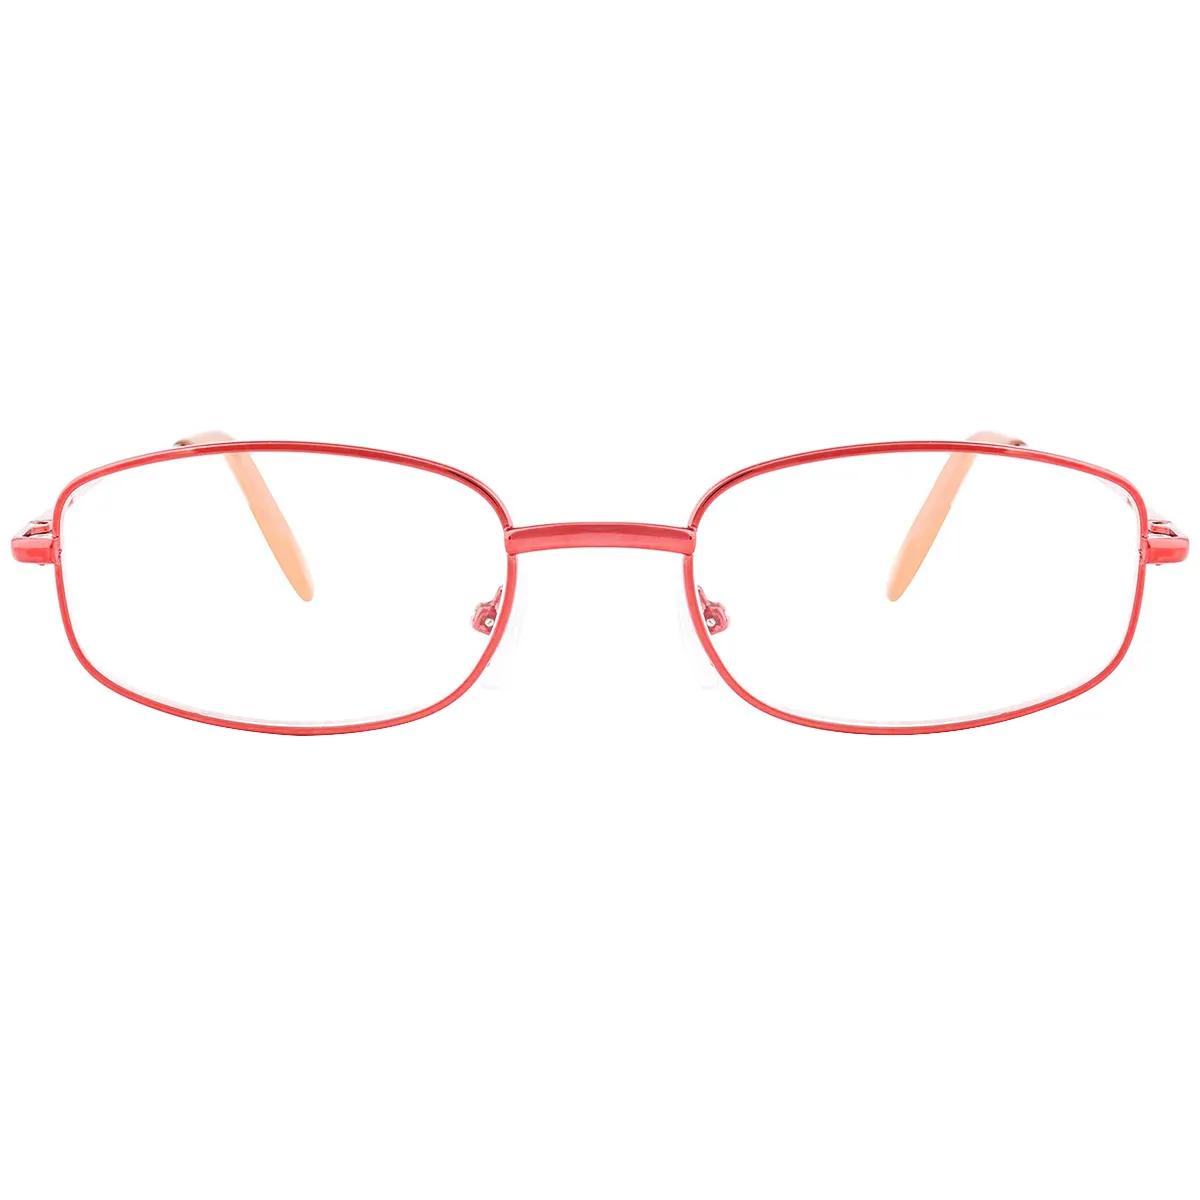 Callpidae - Oval Red Reading glasses for Men & Women